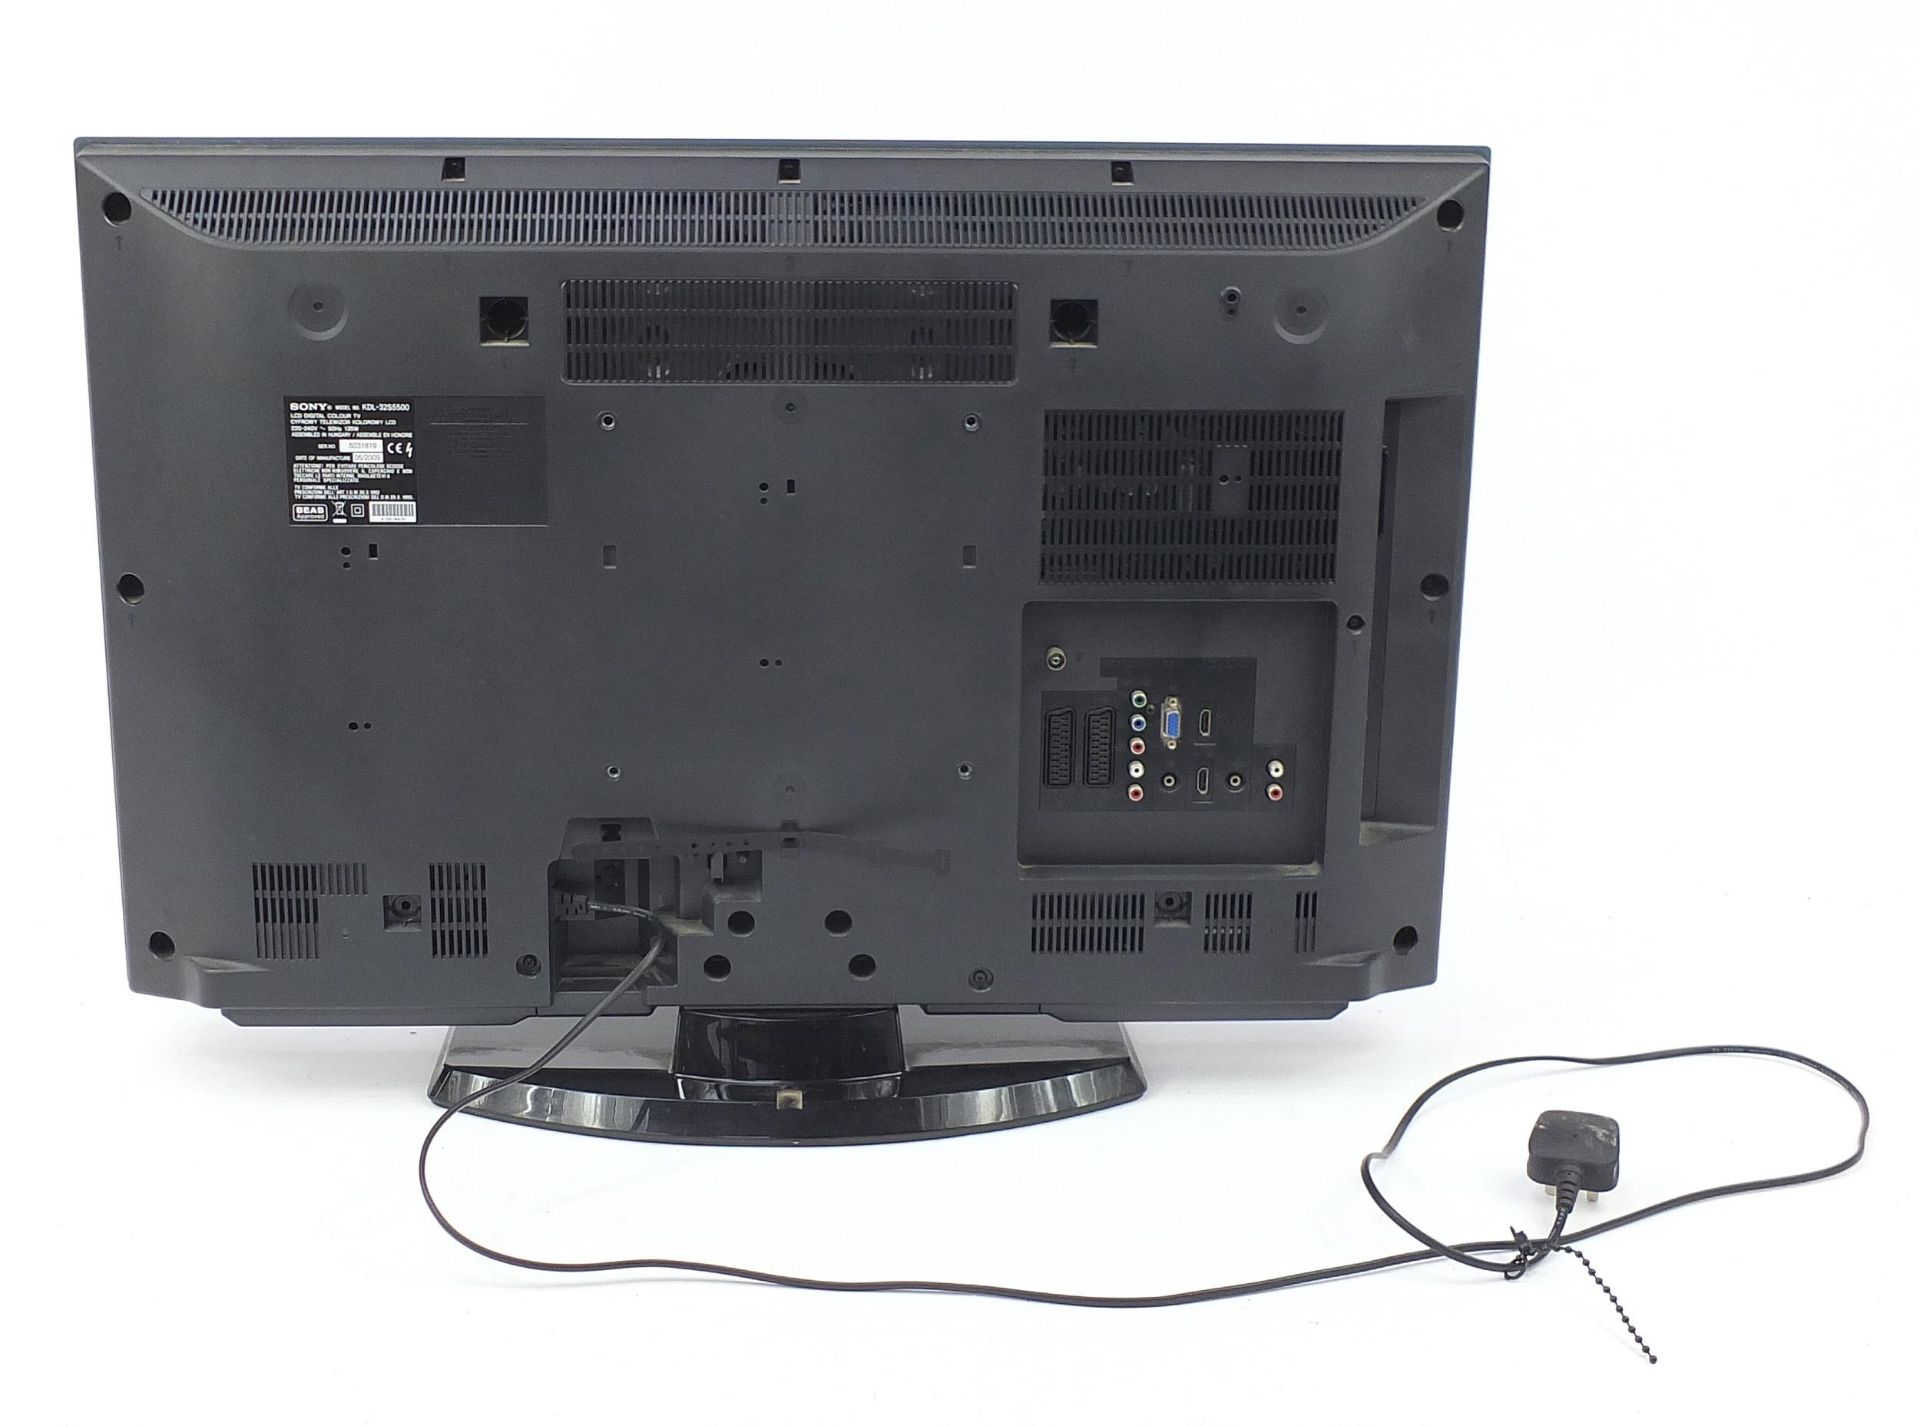 Sony Bravia 32 inch LCD TV, model KDL-32S5500 - Image 2 of 4